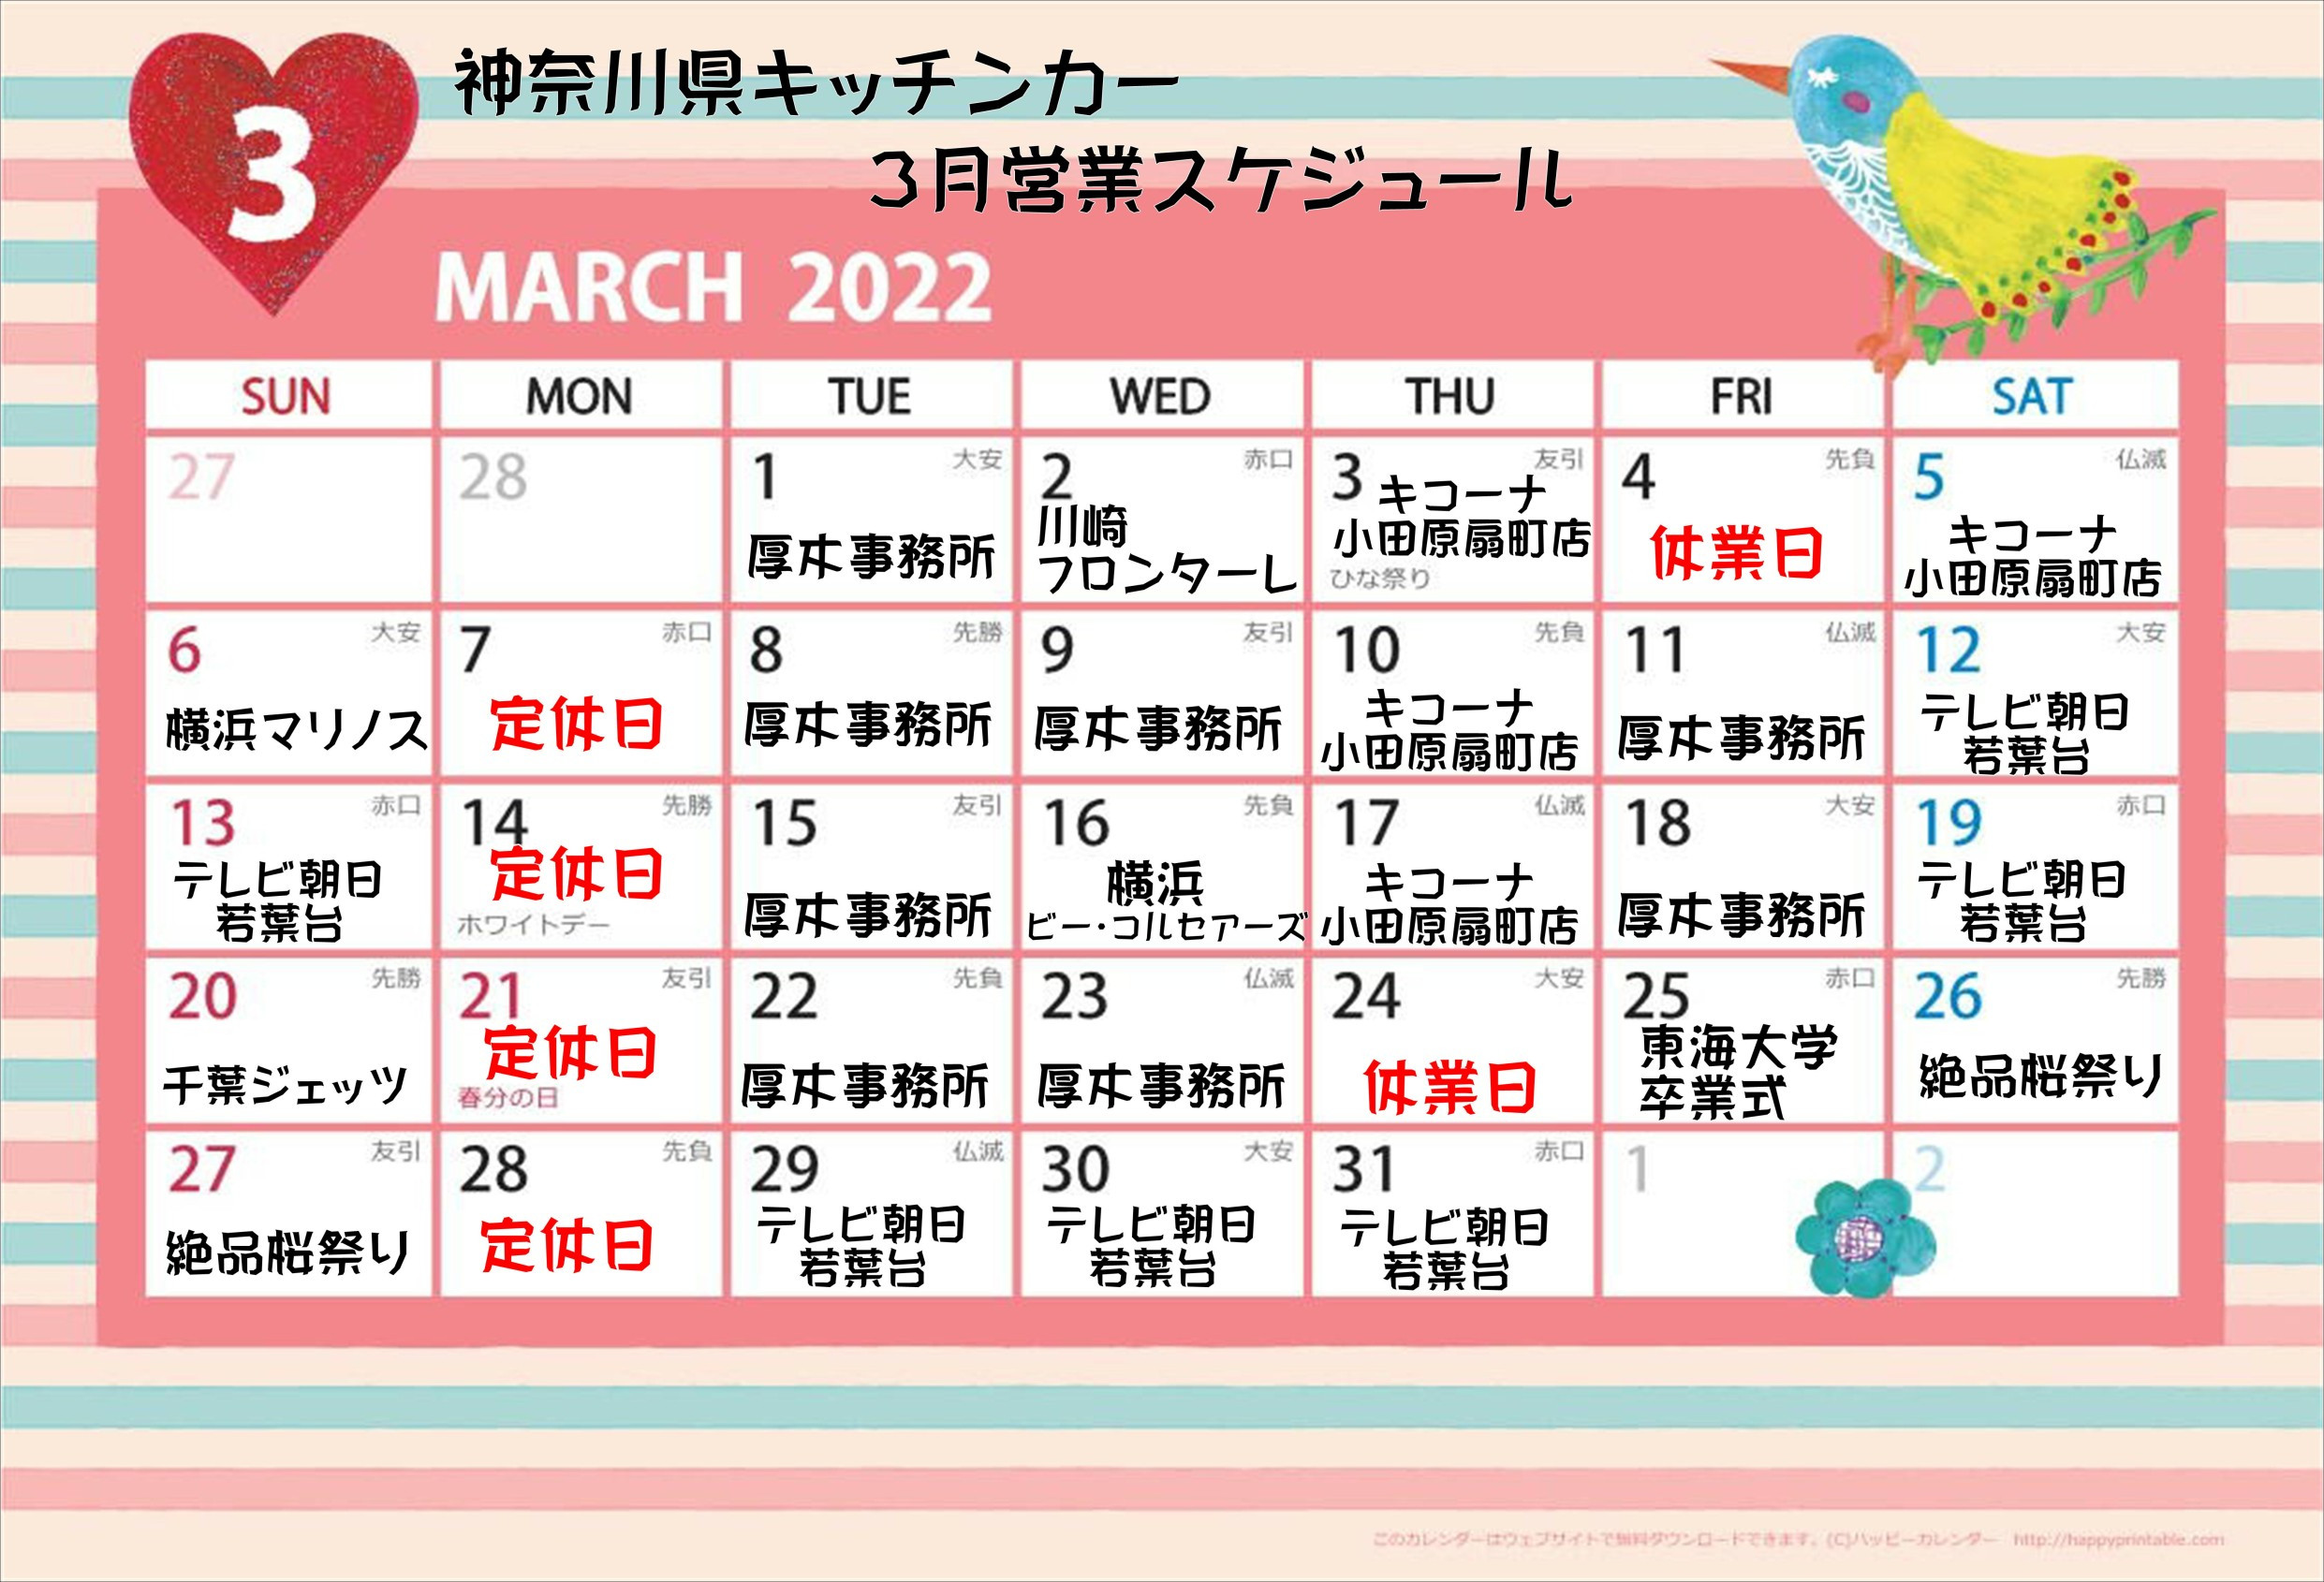 3月神奈川県キッチンカー出店スケジュール